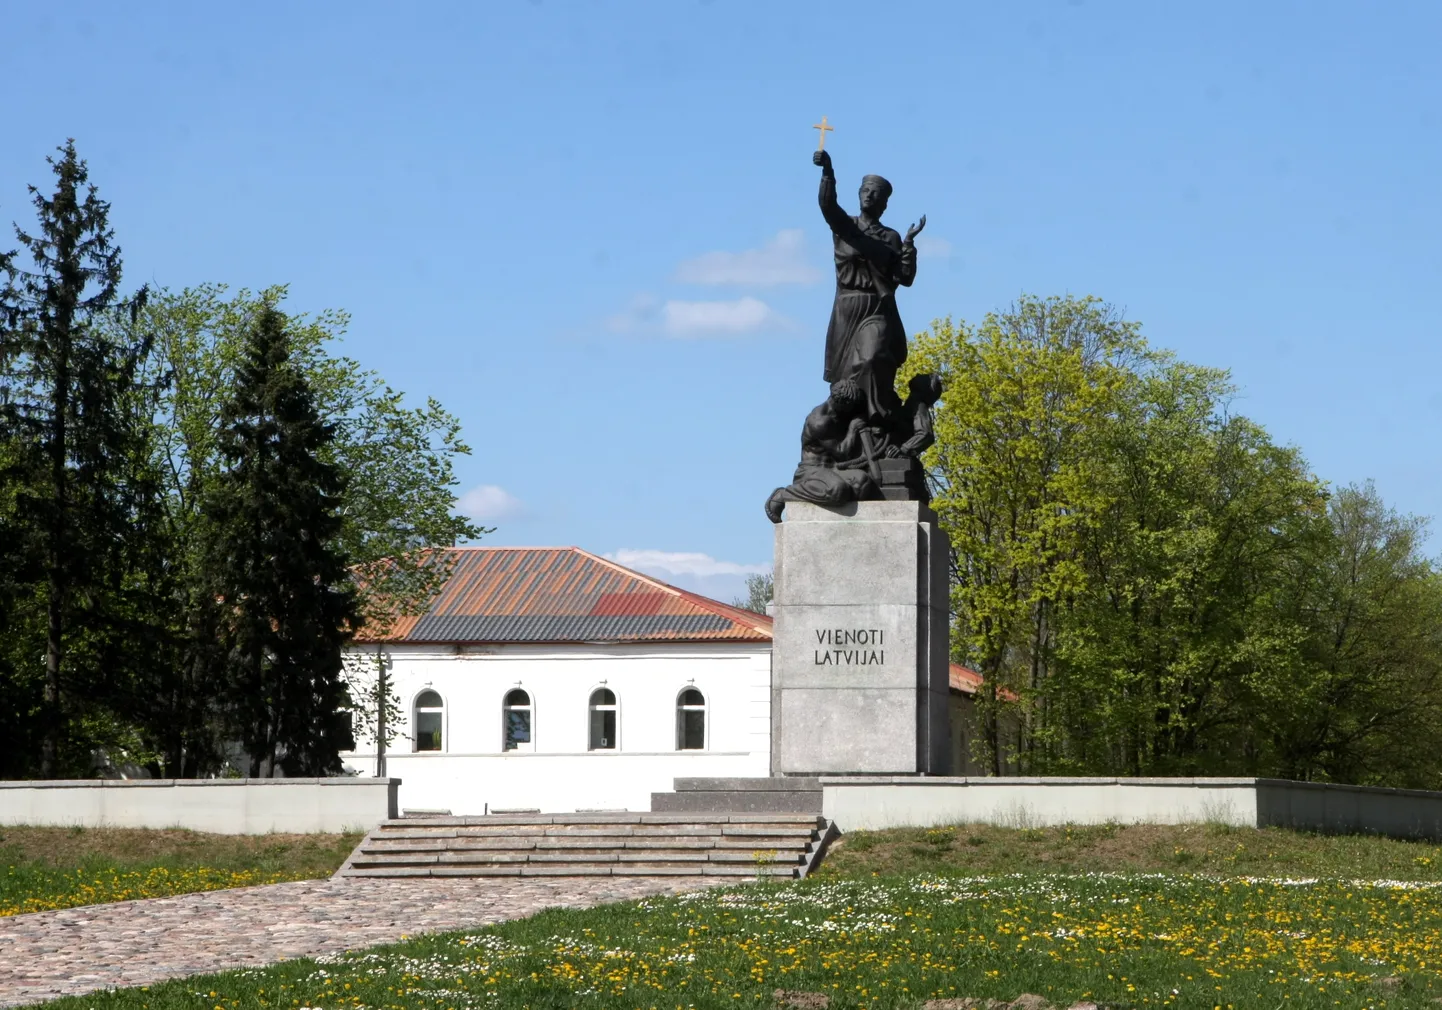 Rēzeknes simbols - Latgales atbrīvošanas piemineklis "Vienoti Latvijai" (Latgales Māra).